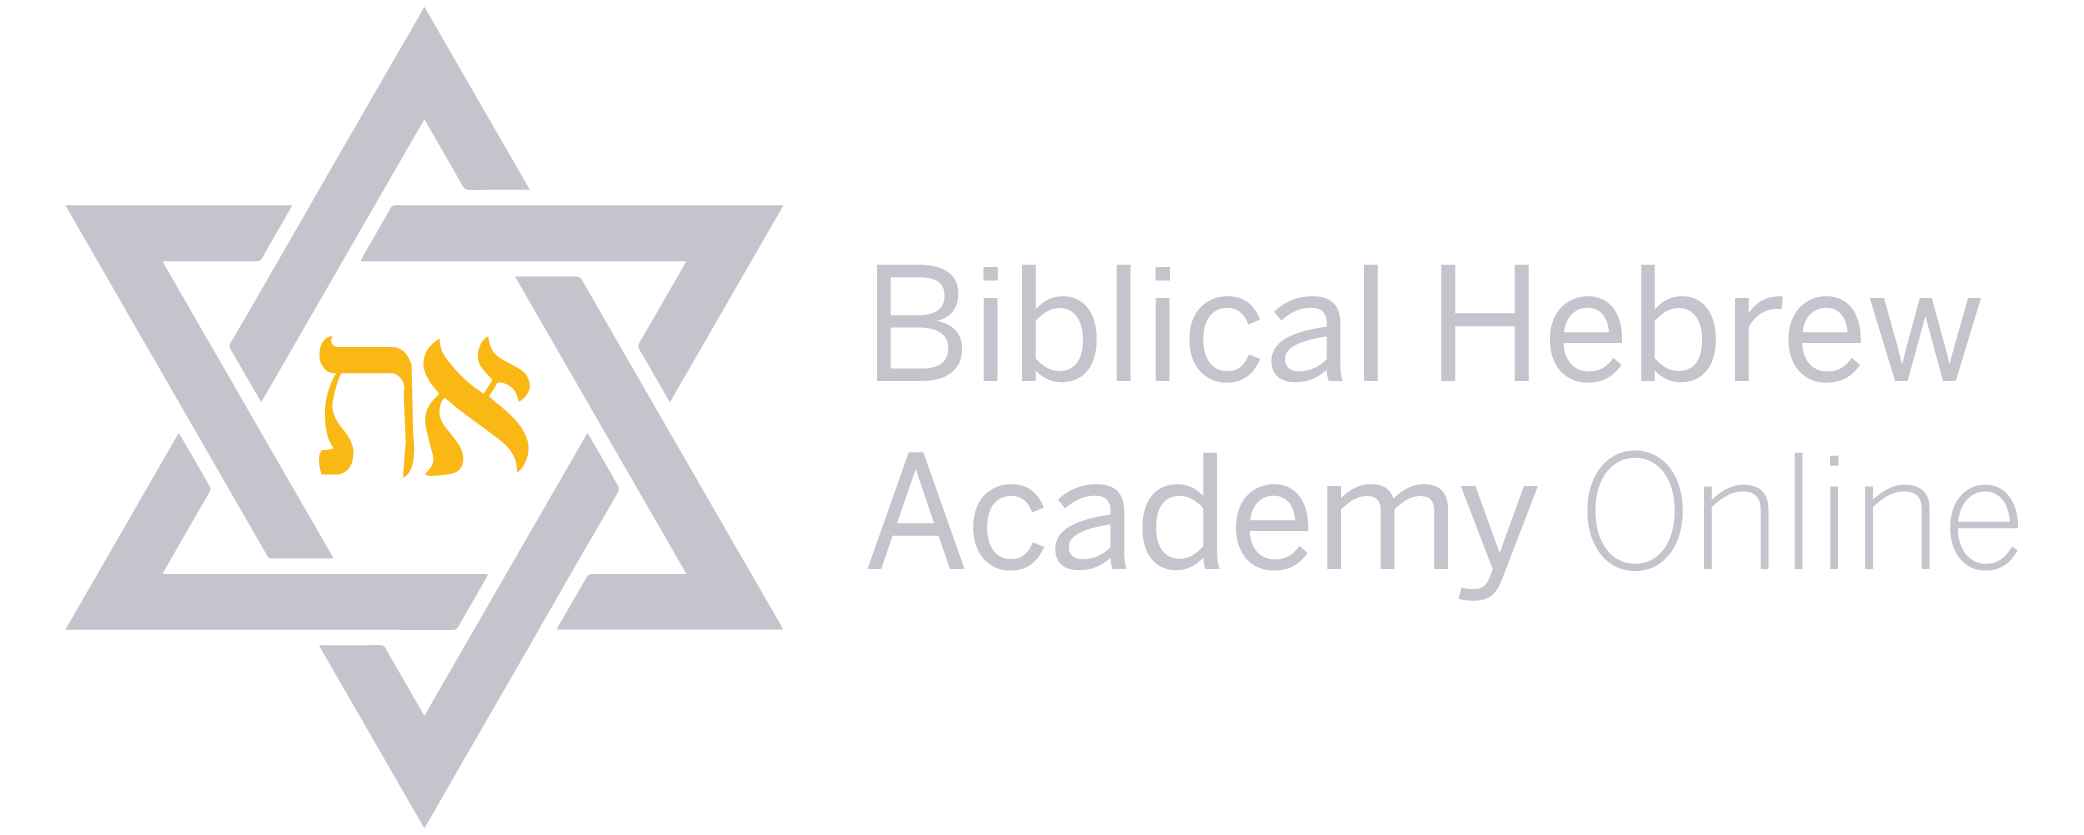 Biblical Hebrew Academy Online